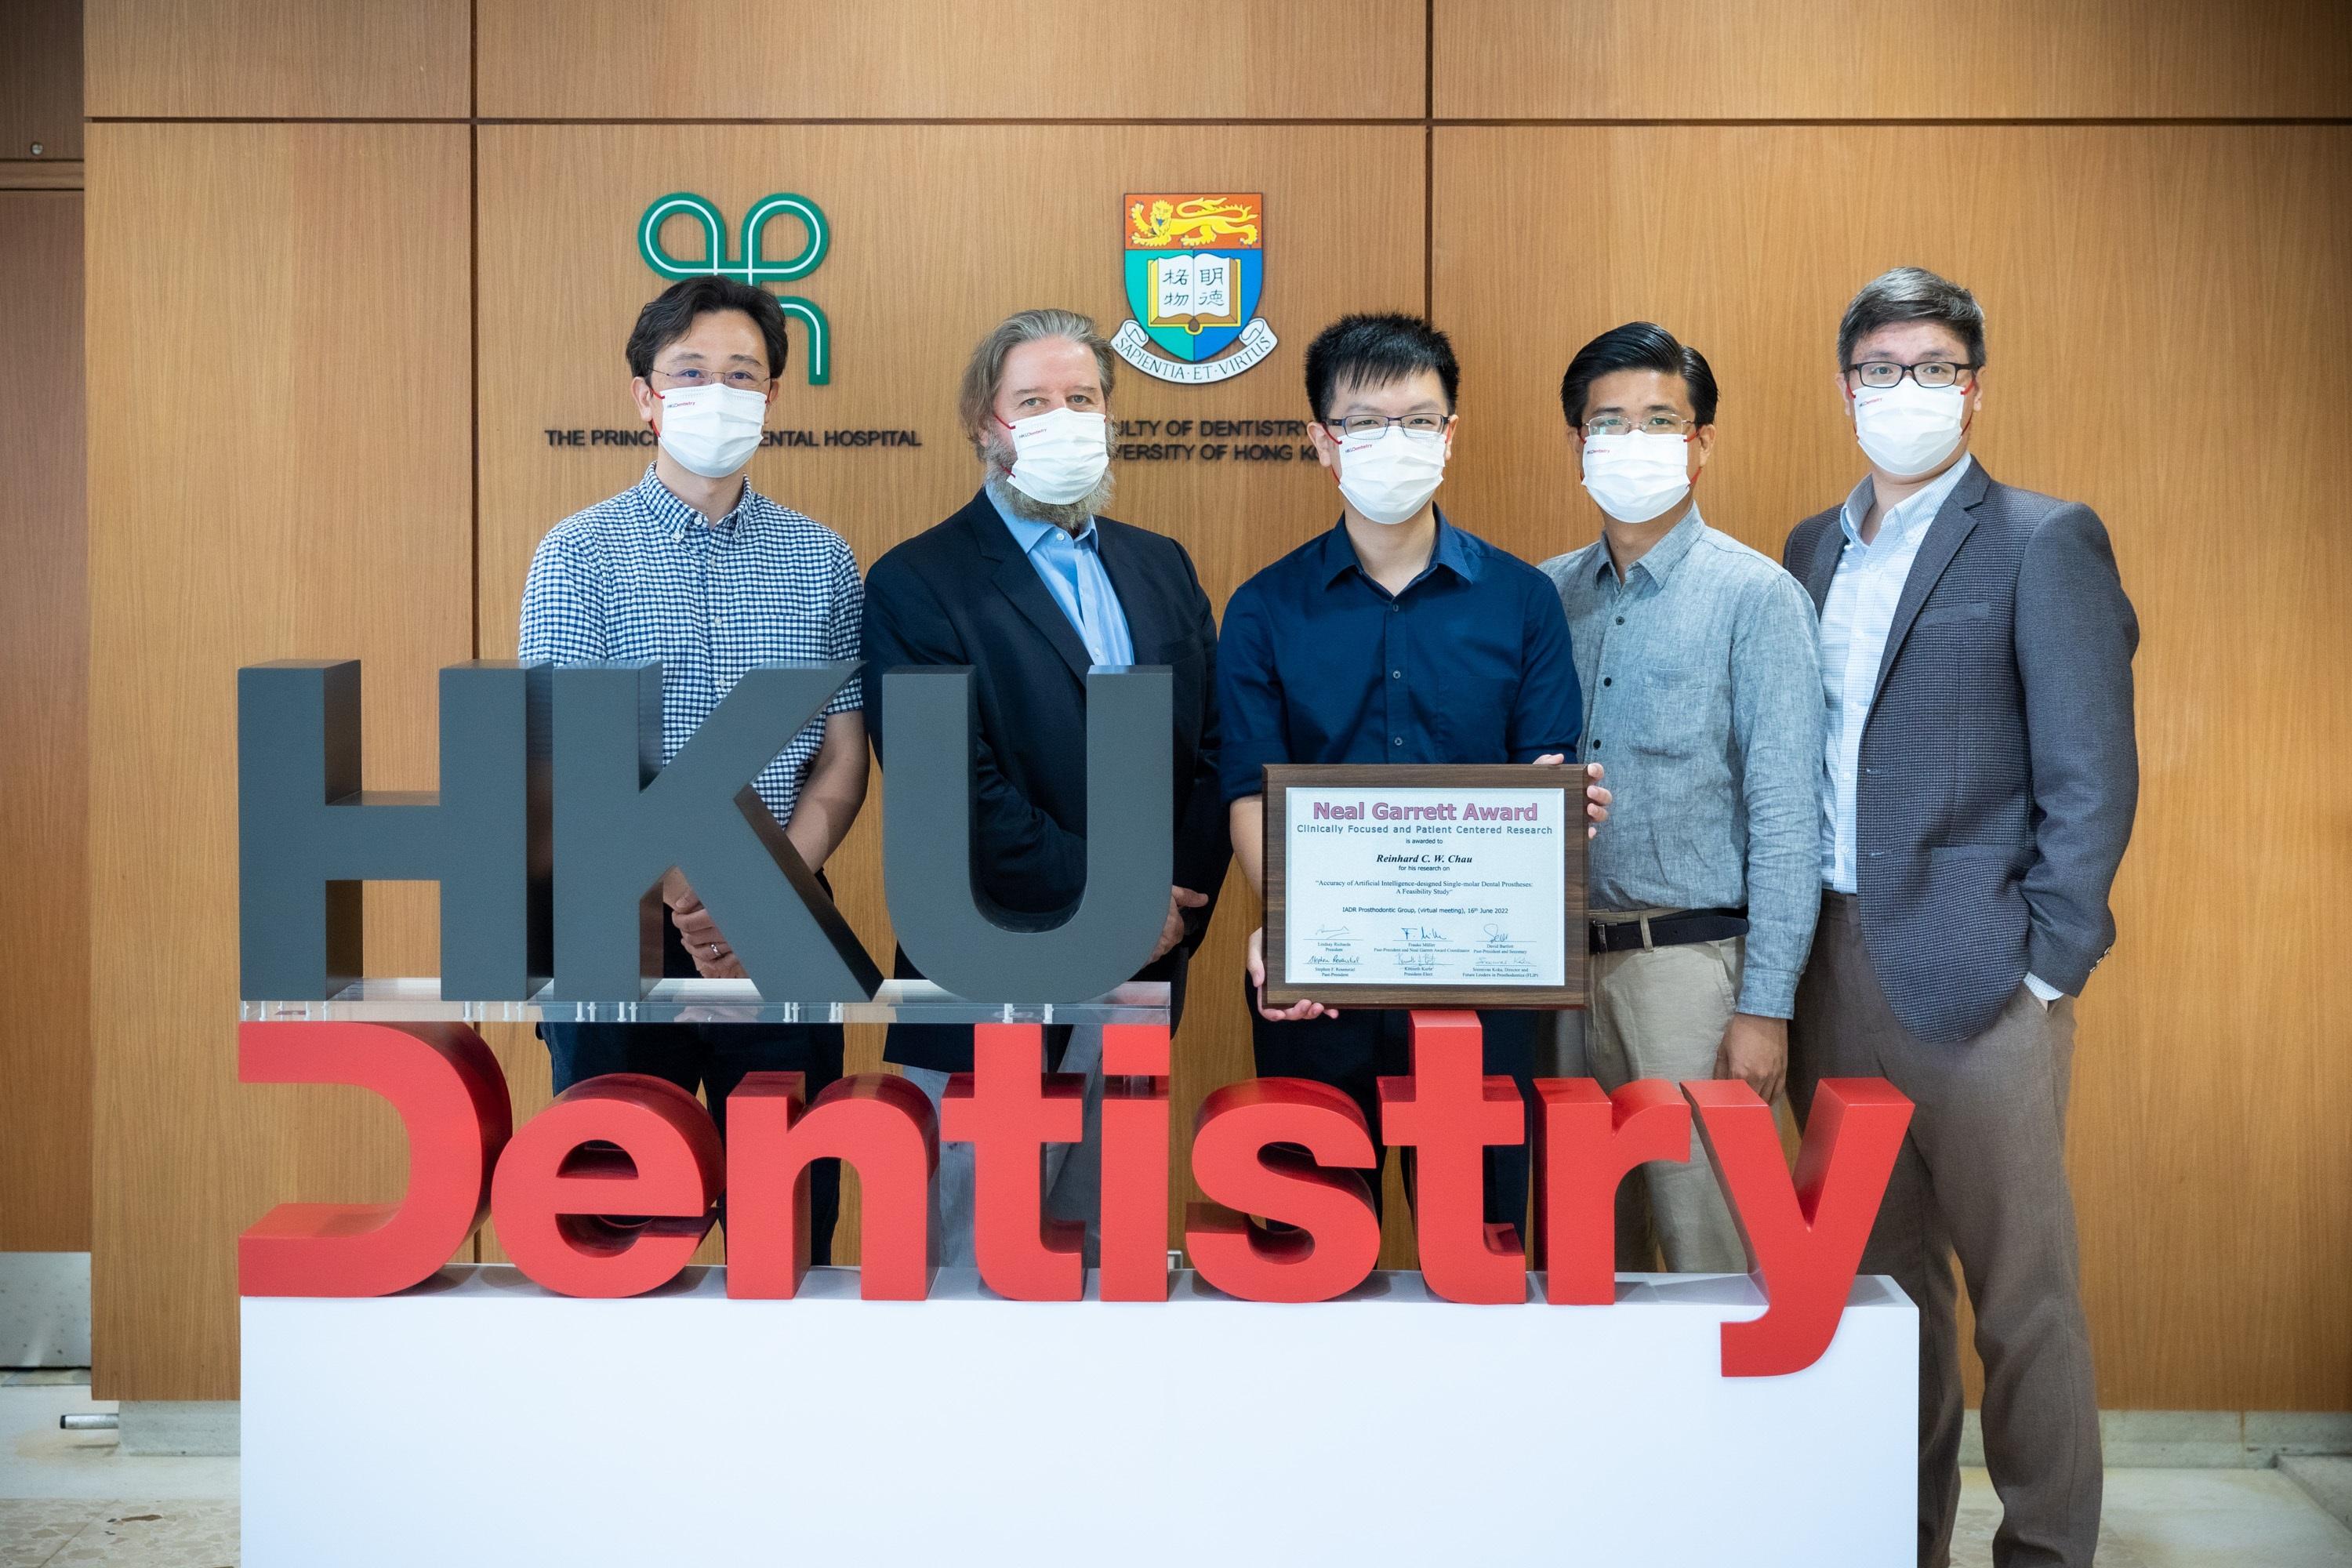 (右起) 林宇恒醫生、Khaing Myat Thu醫生、周俊宏醫生、麥浩明教授和 熊體超博士